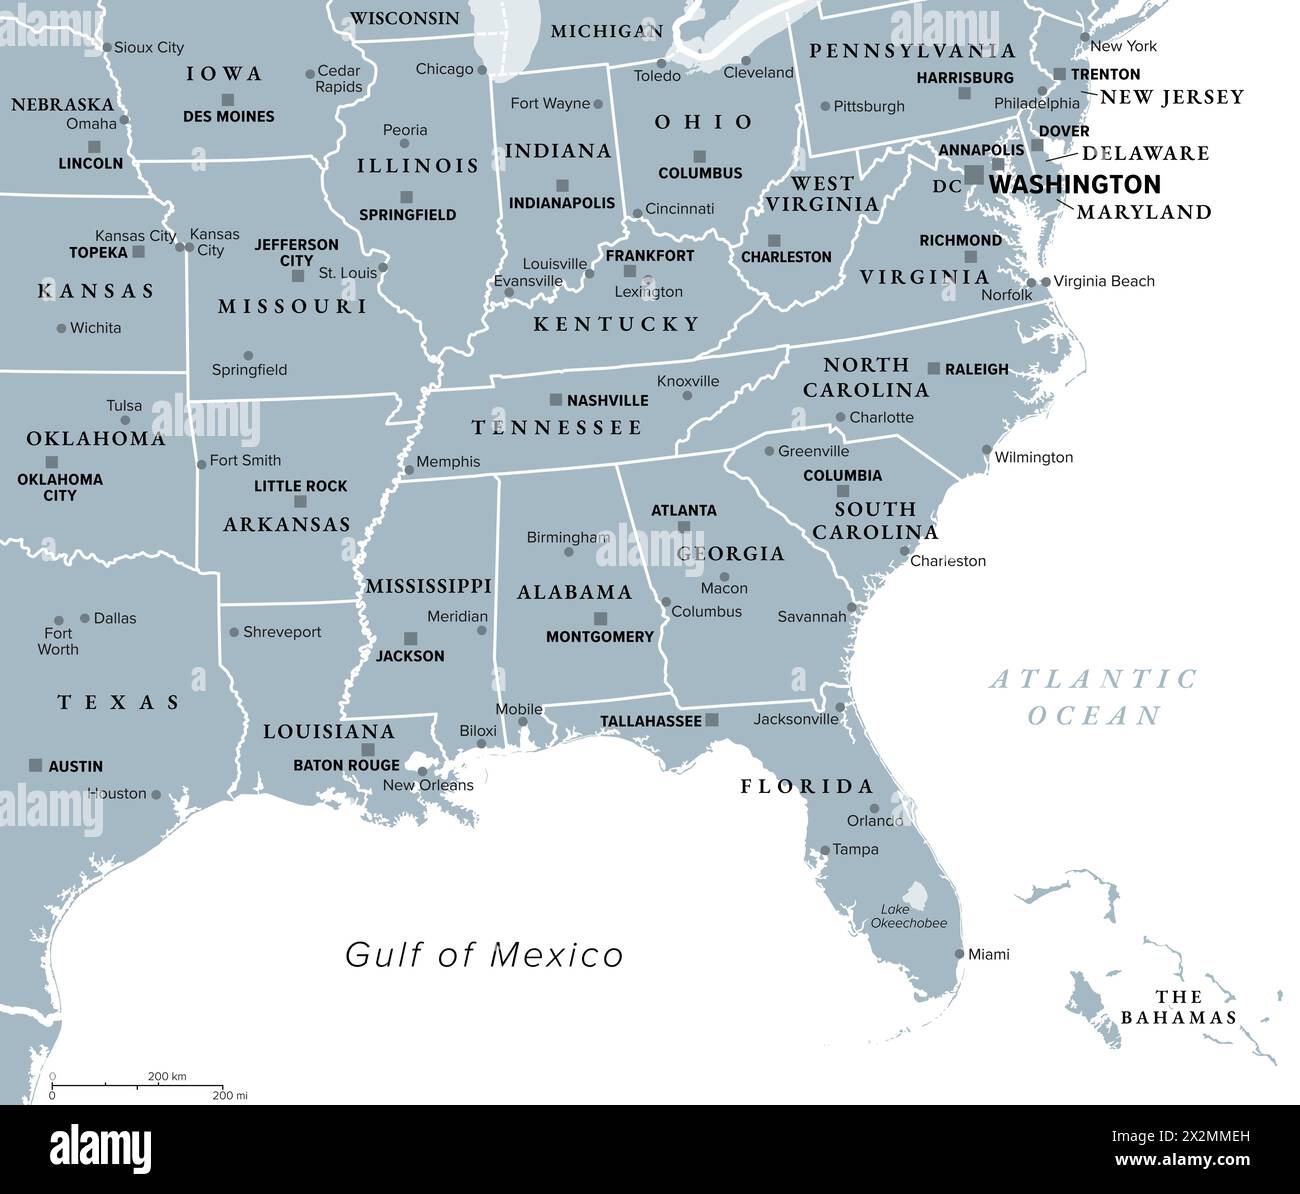 Regione sudorientale, sud degli Stati Uniti, mappa politica grigia. Regione geografica e culturale, nota anche come Stati Uniti meridionali. Foto Stock